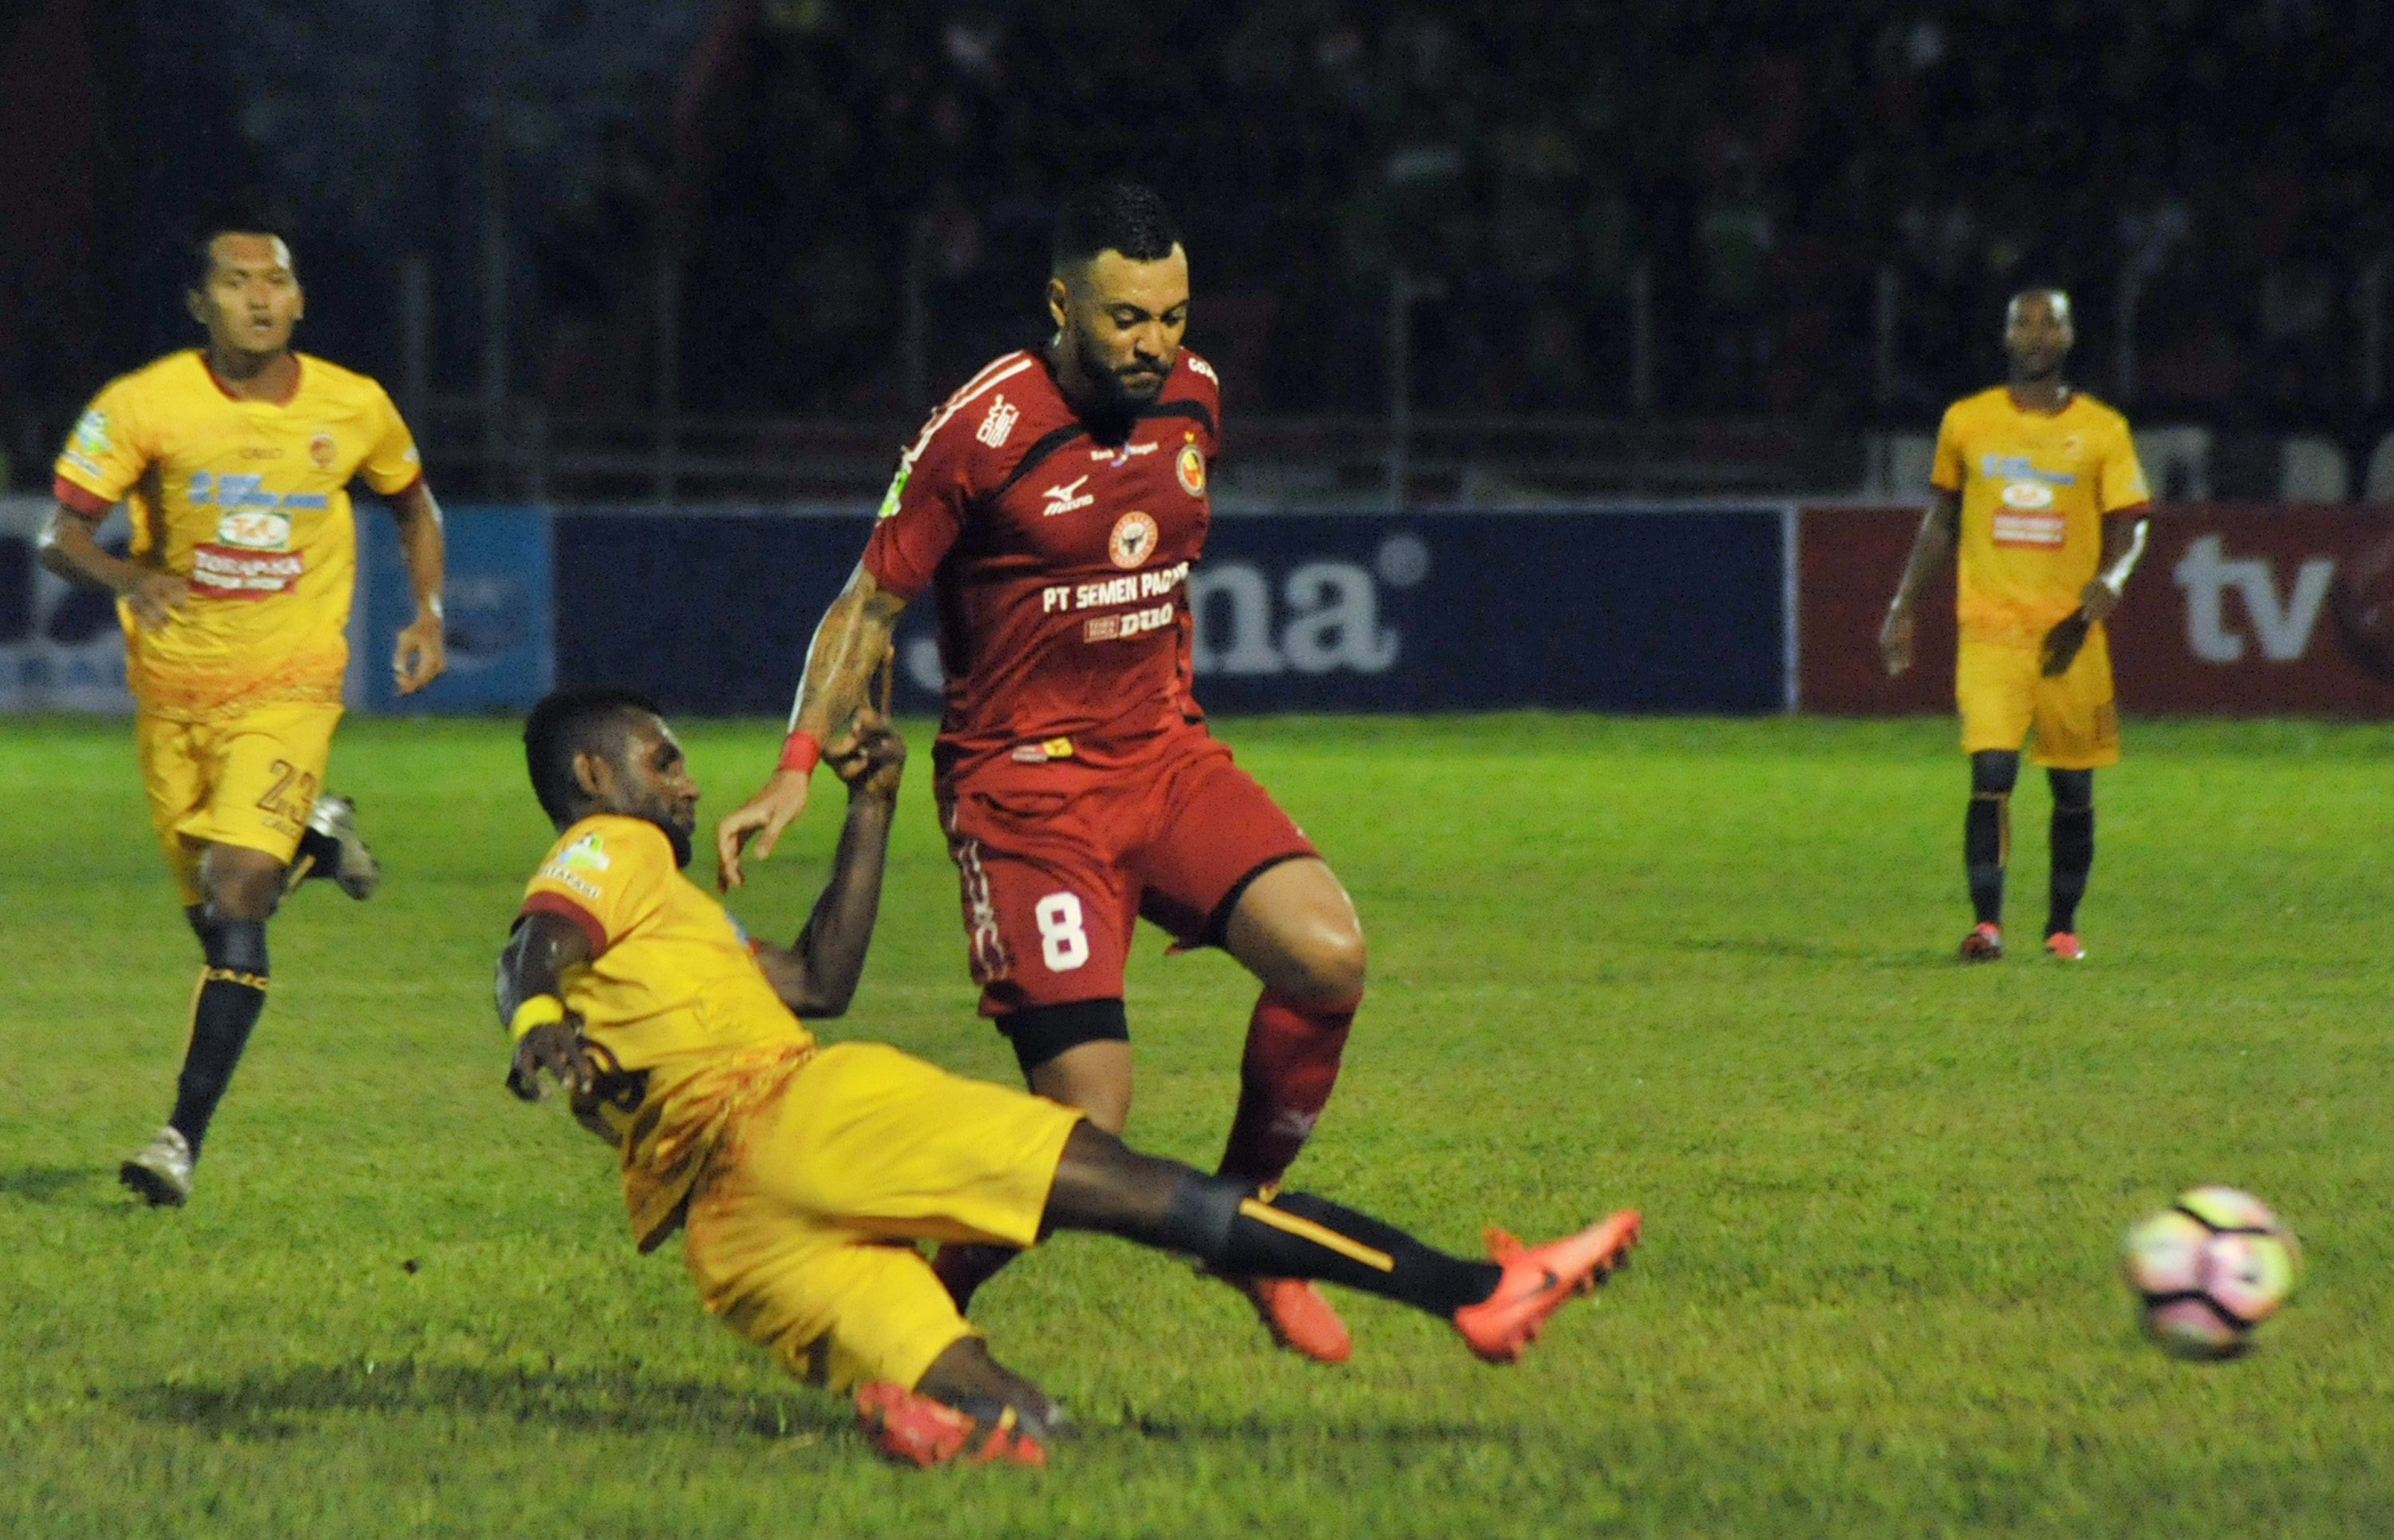 Pesepakbola Semen Padang FC, Marcel Sacramento (kanan) berebut bola dengan pemain Sriwijaya FC, Rudolof Yanto Basna (kiri) pada pertandingan Gojek Traveloka Liga 1, di Stadion GOR H Agus Salim, Padang, Sumatera Barat.